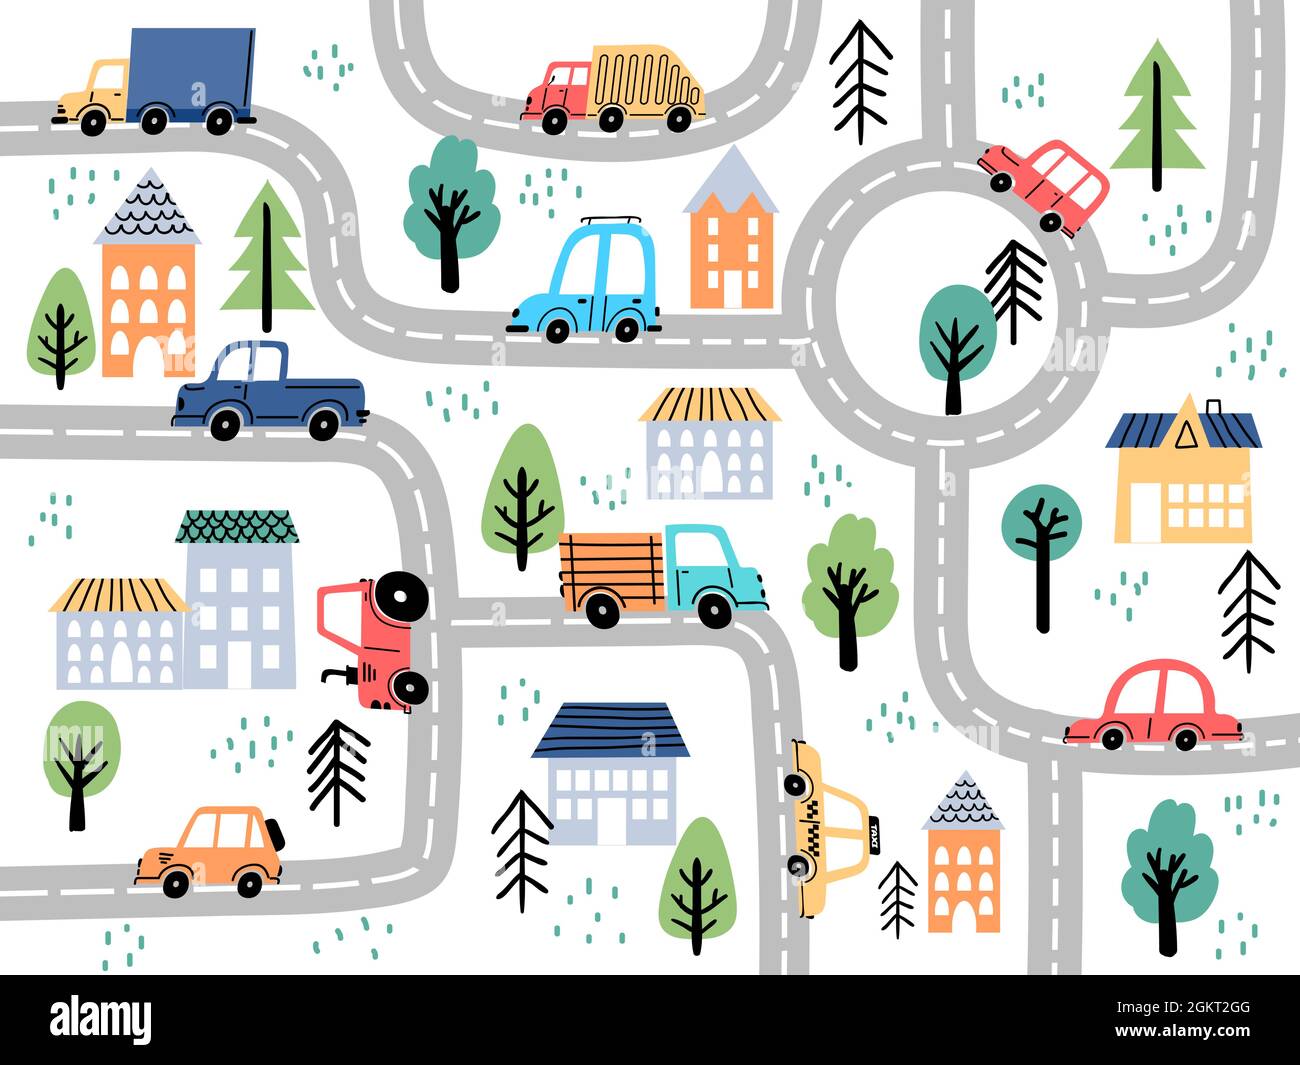 Alfombras para niños, mapa de la ciudad, carros de conducción de carretera,  mapa de la ciudad, para niños, niñas, niños pequeños, alfombra de juego